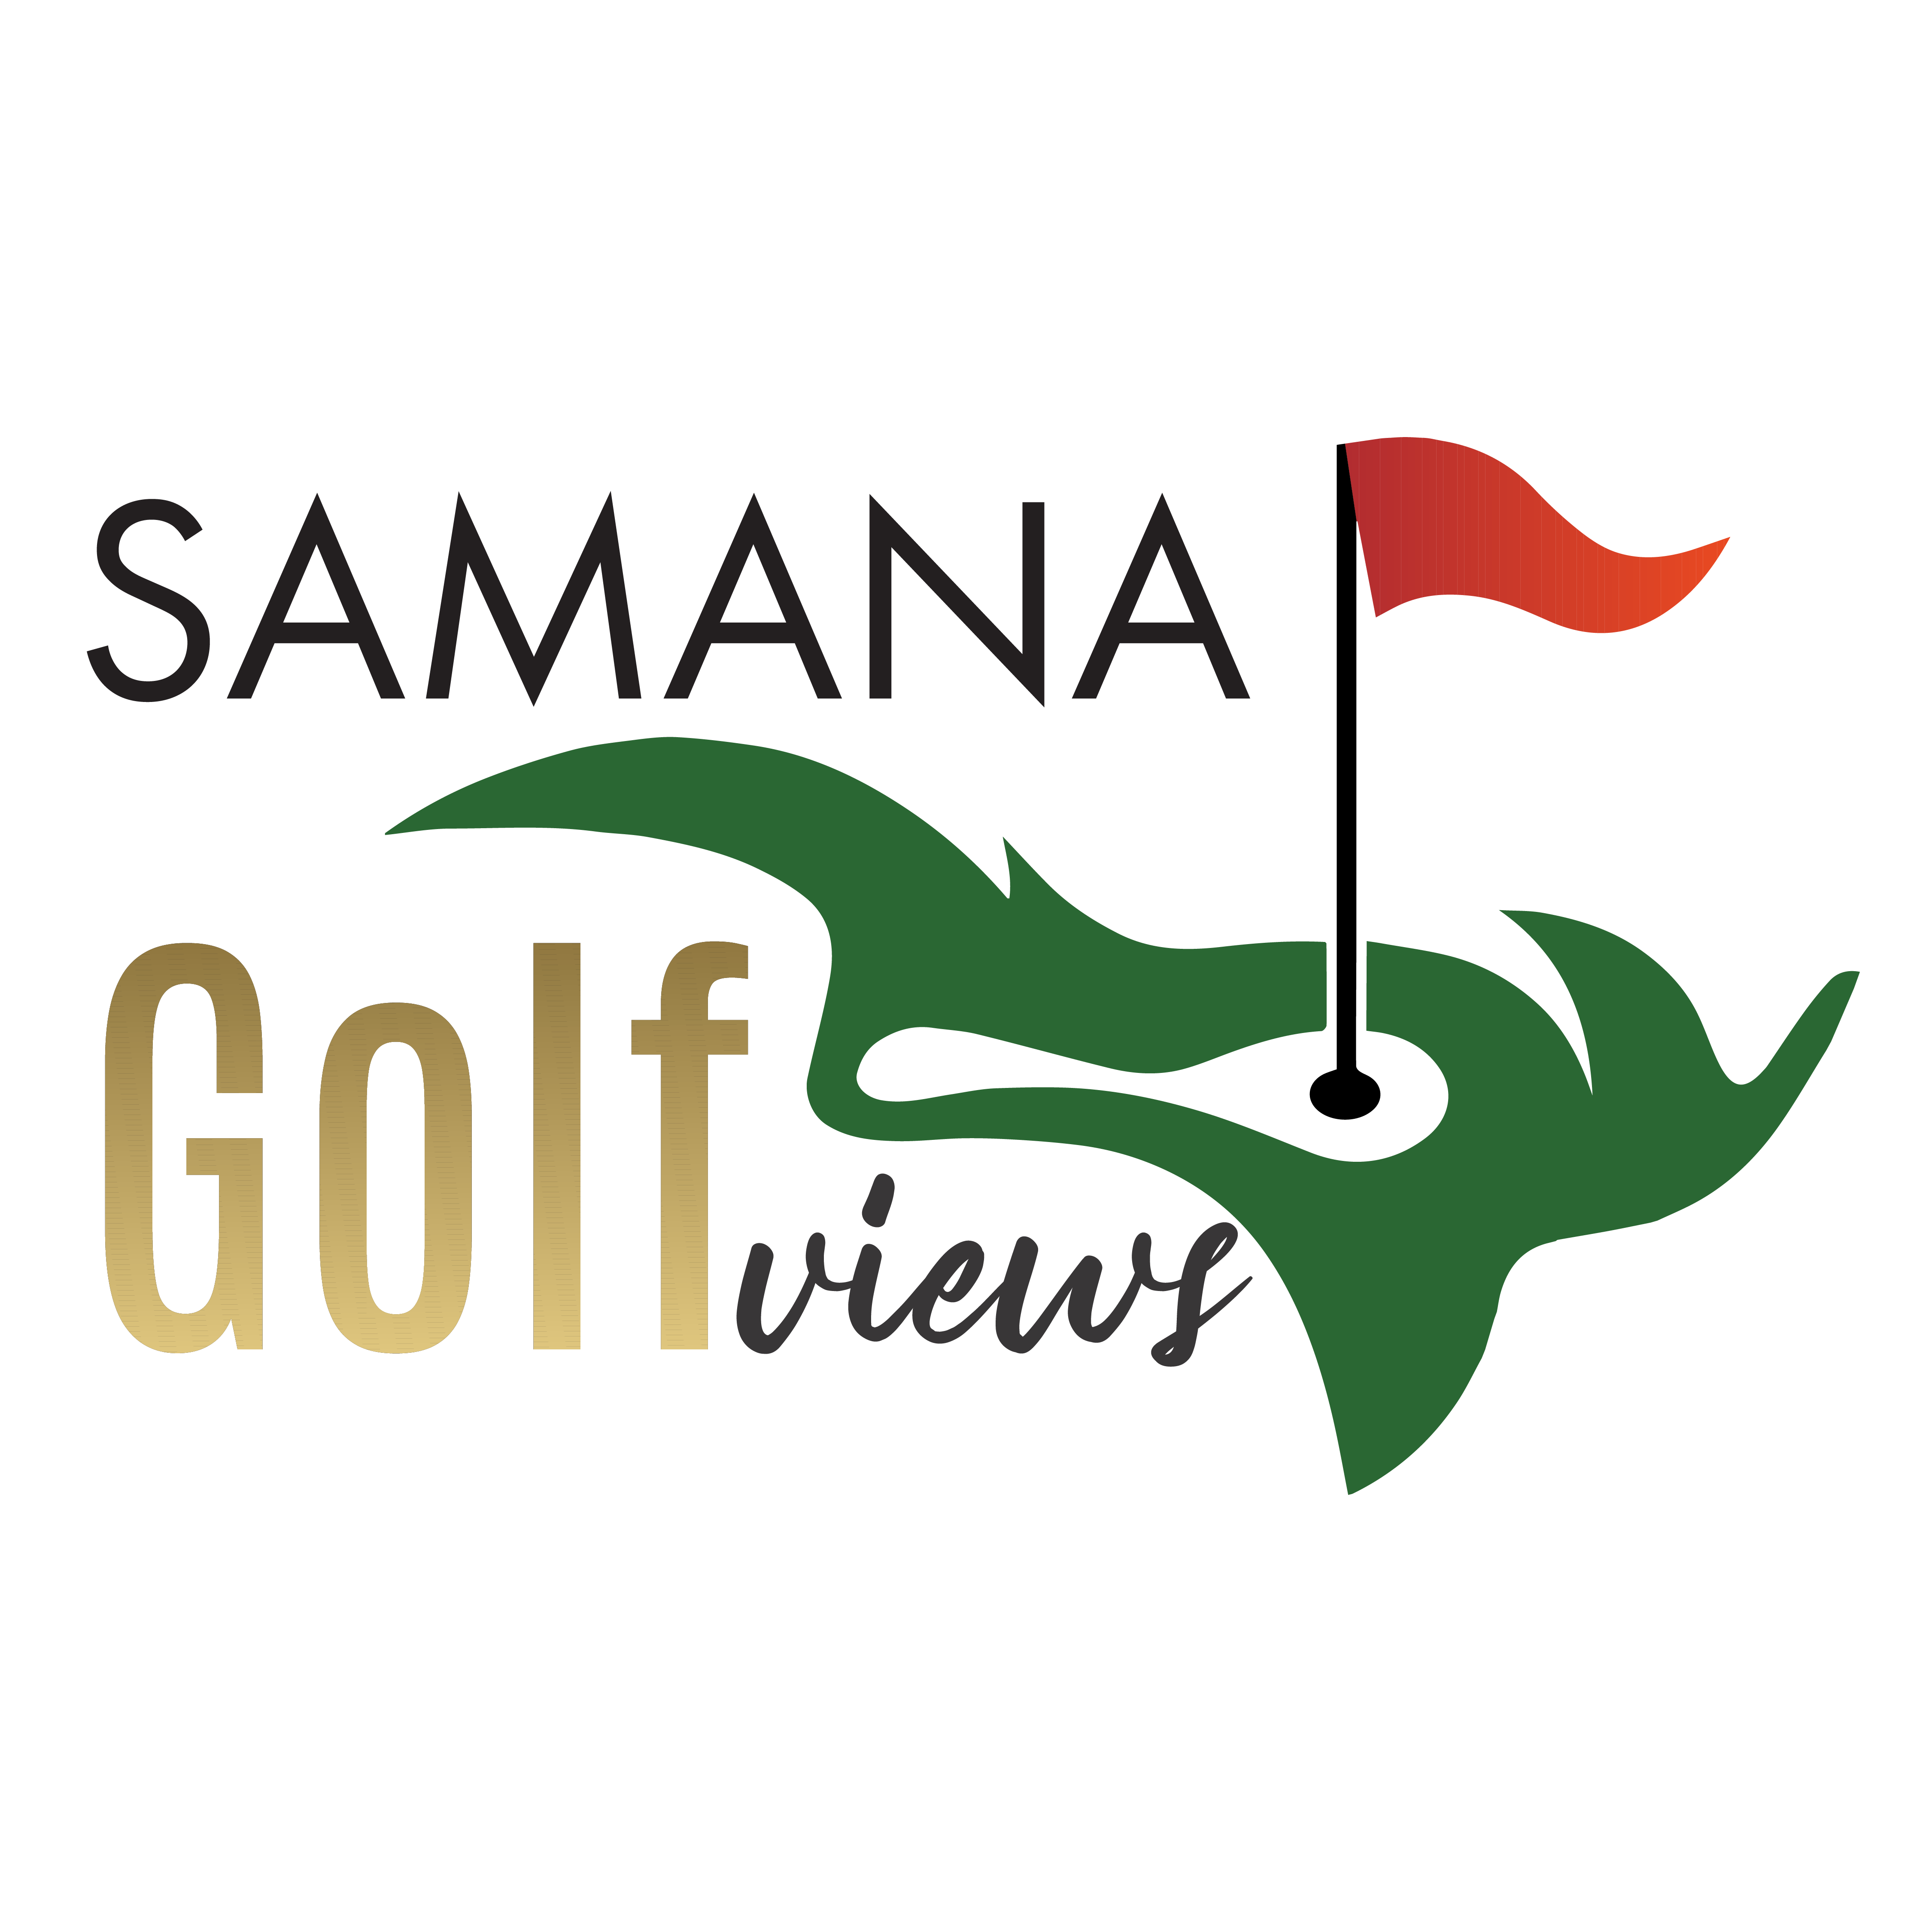 SAMANA Golf Views